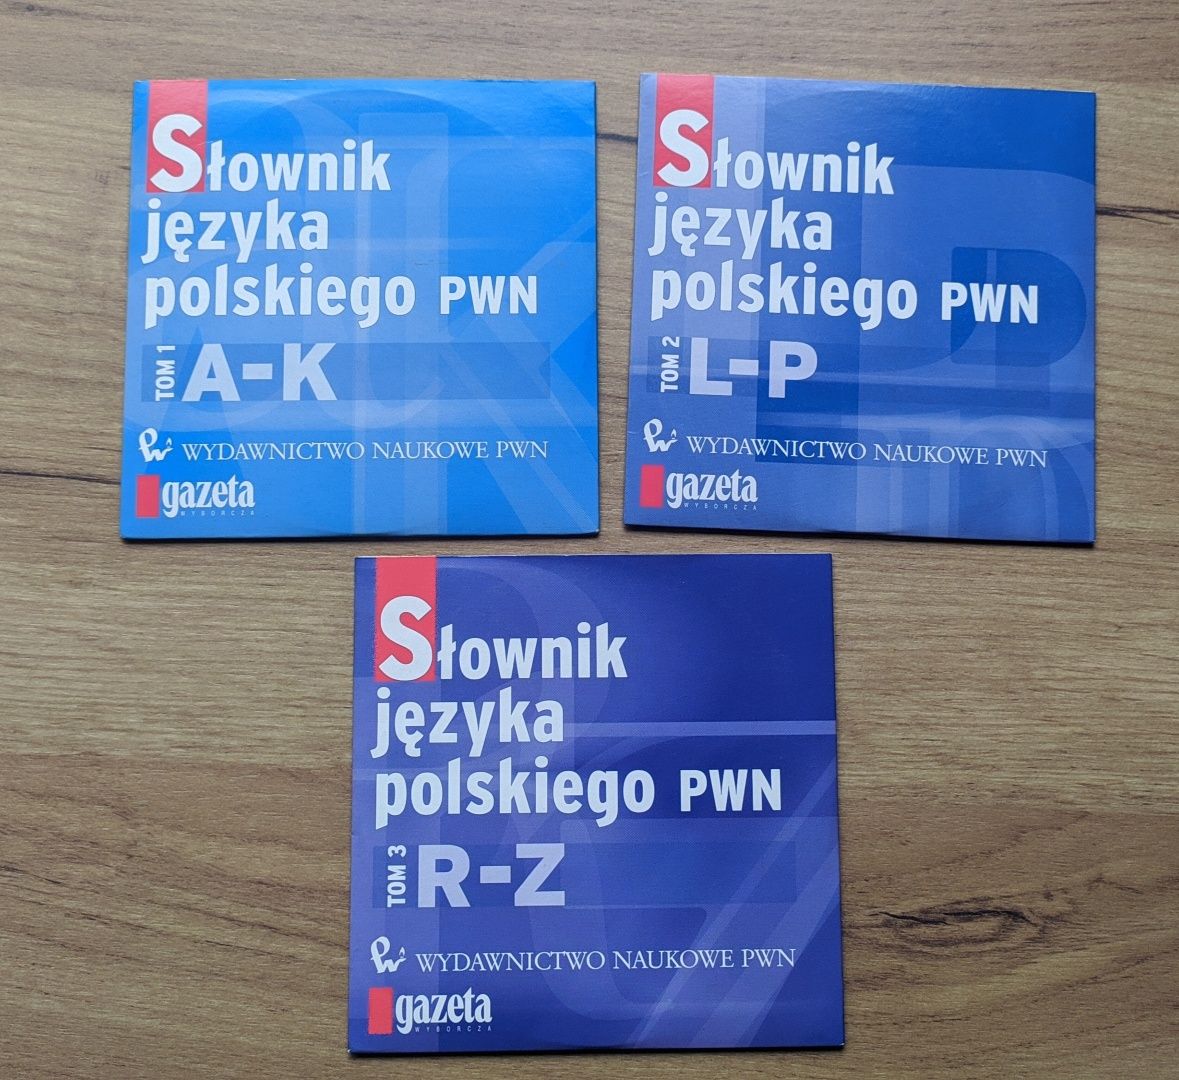 Słownik języka polskiego PWN na płycie CD cena za całość